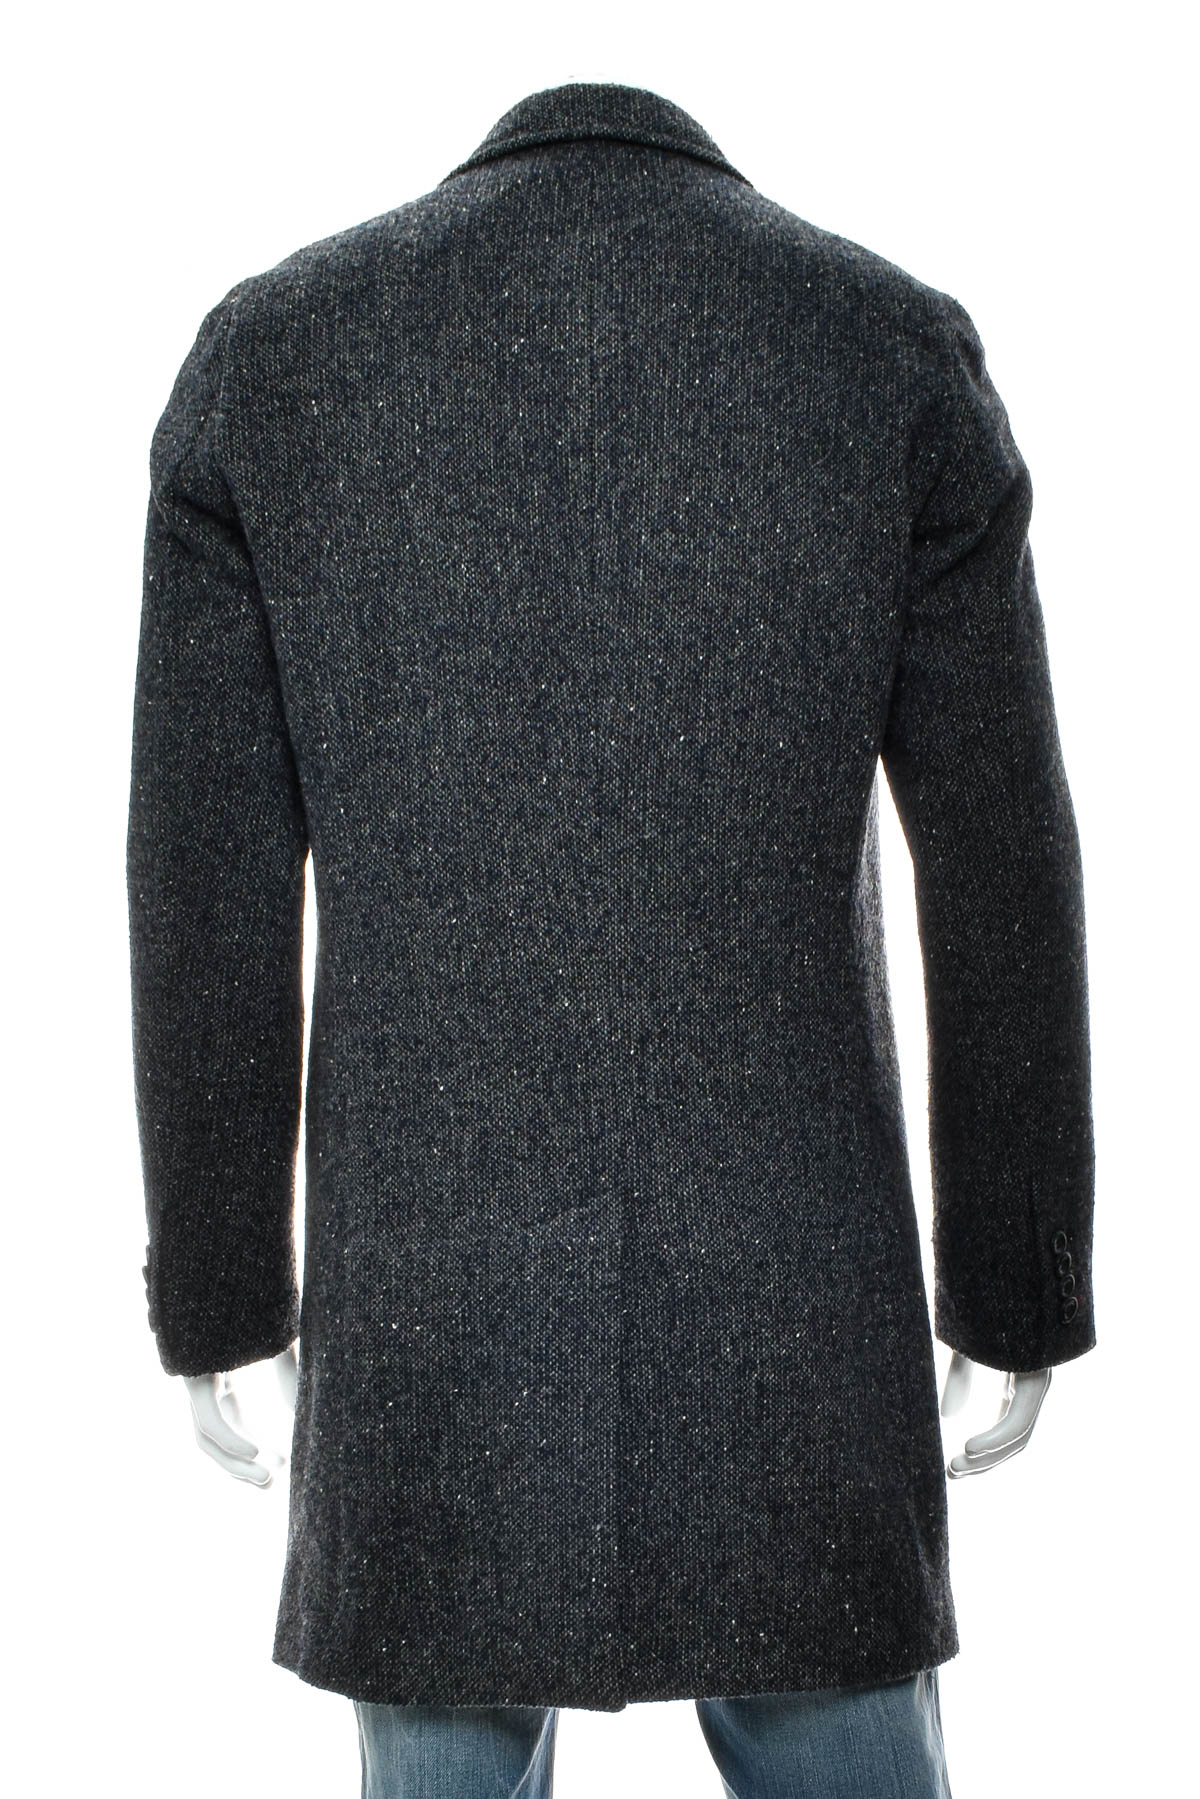 Men's coat - Giorgio - 1